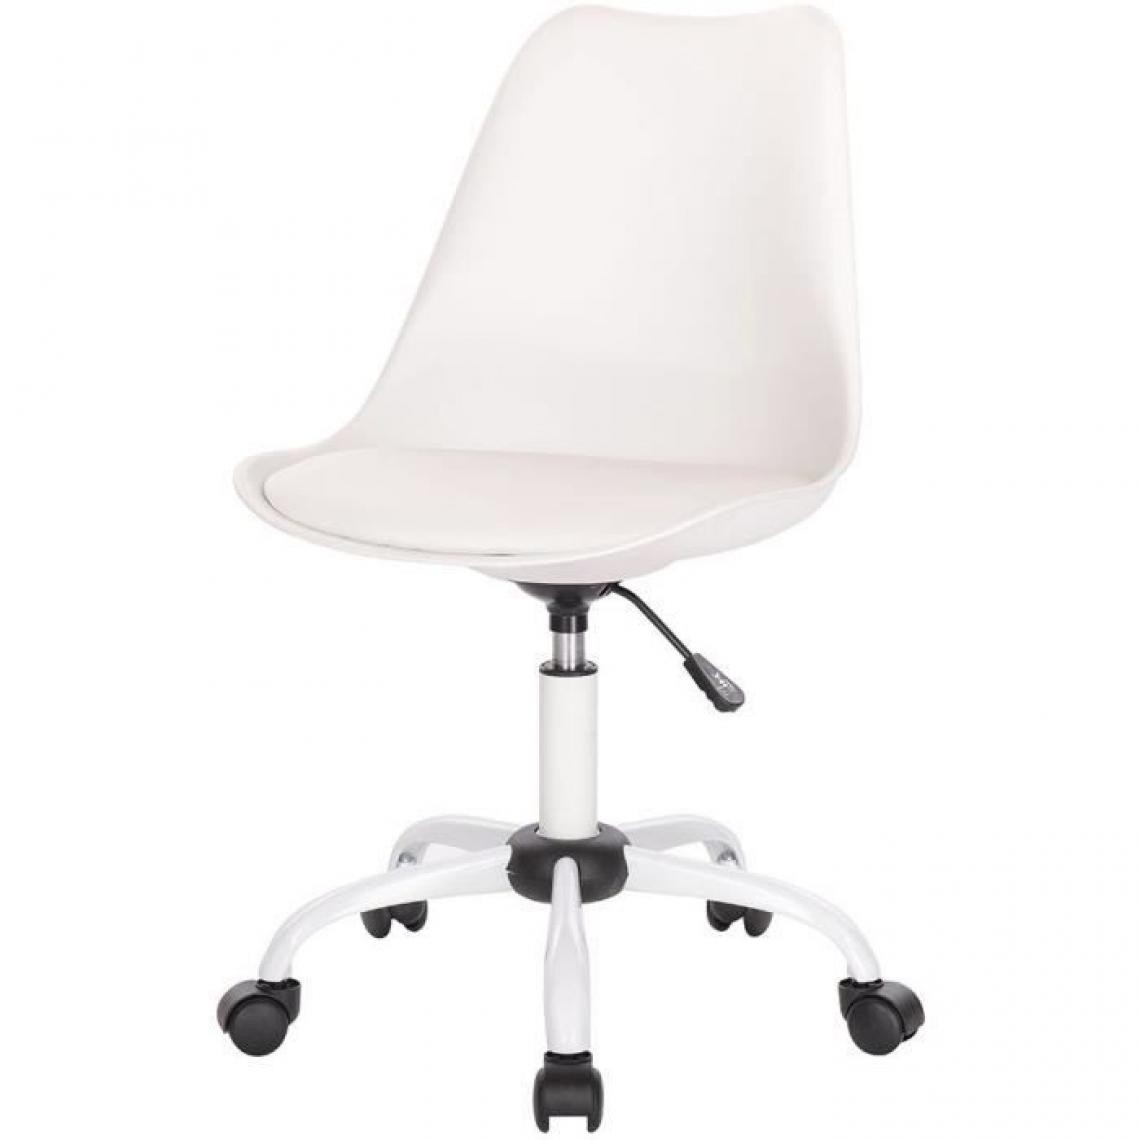 Cstore - WINONA Chaise de bureau ajustable - Blanc - L 48 x P 54 x H 80 / 90 cm - Chaises